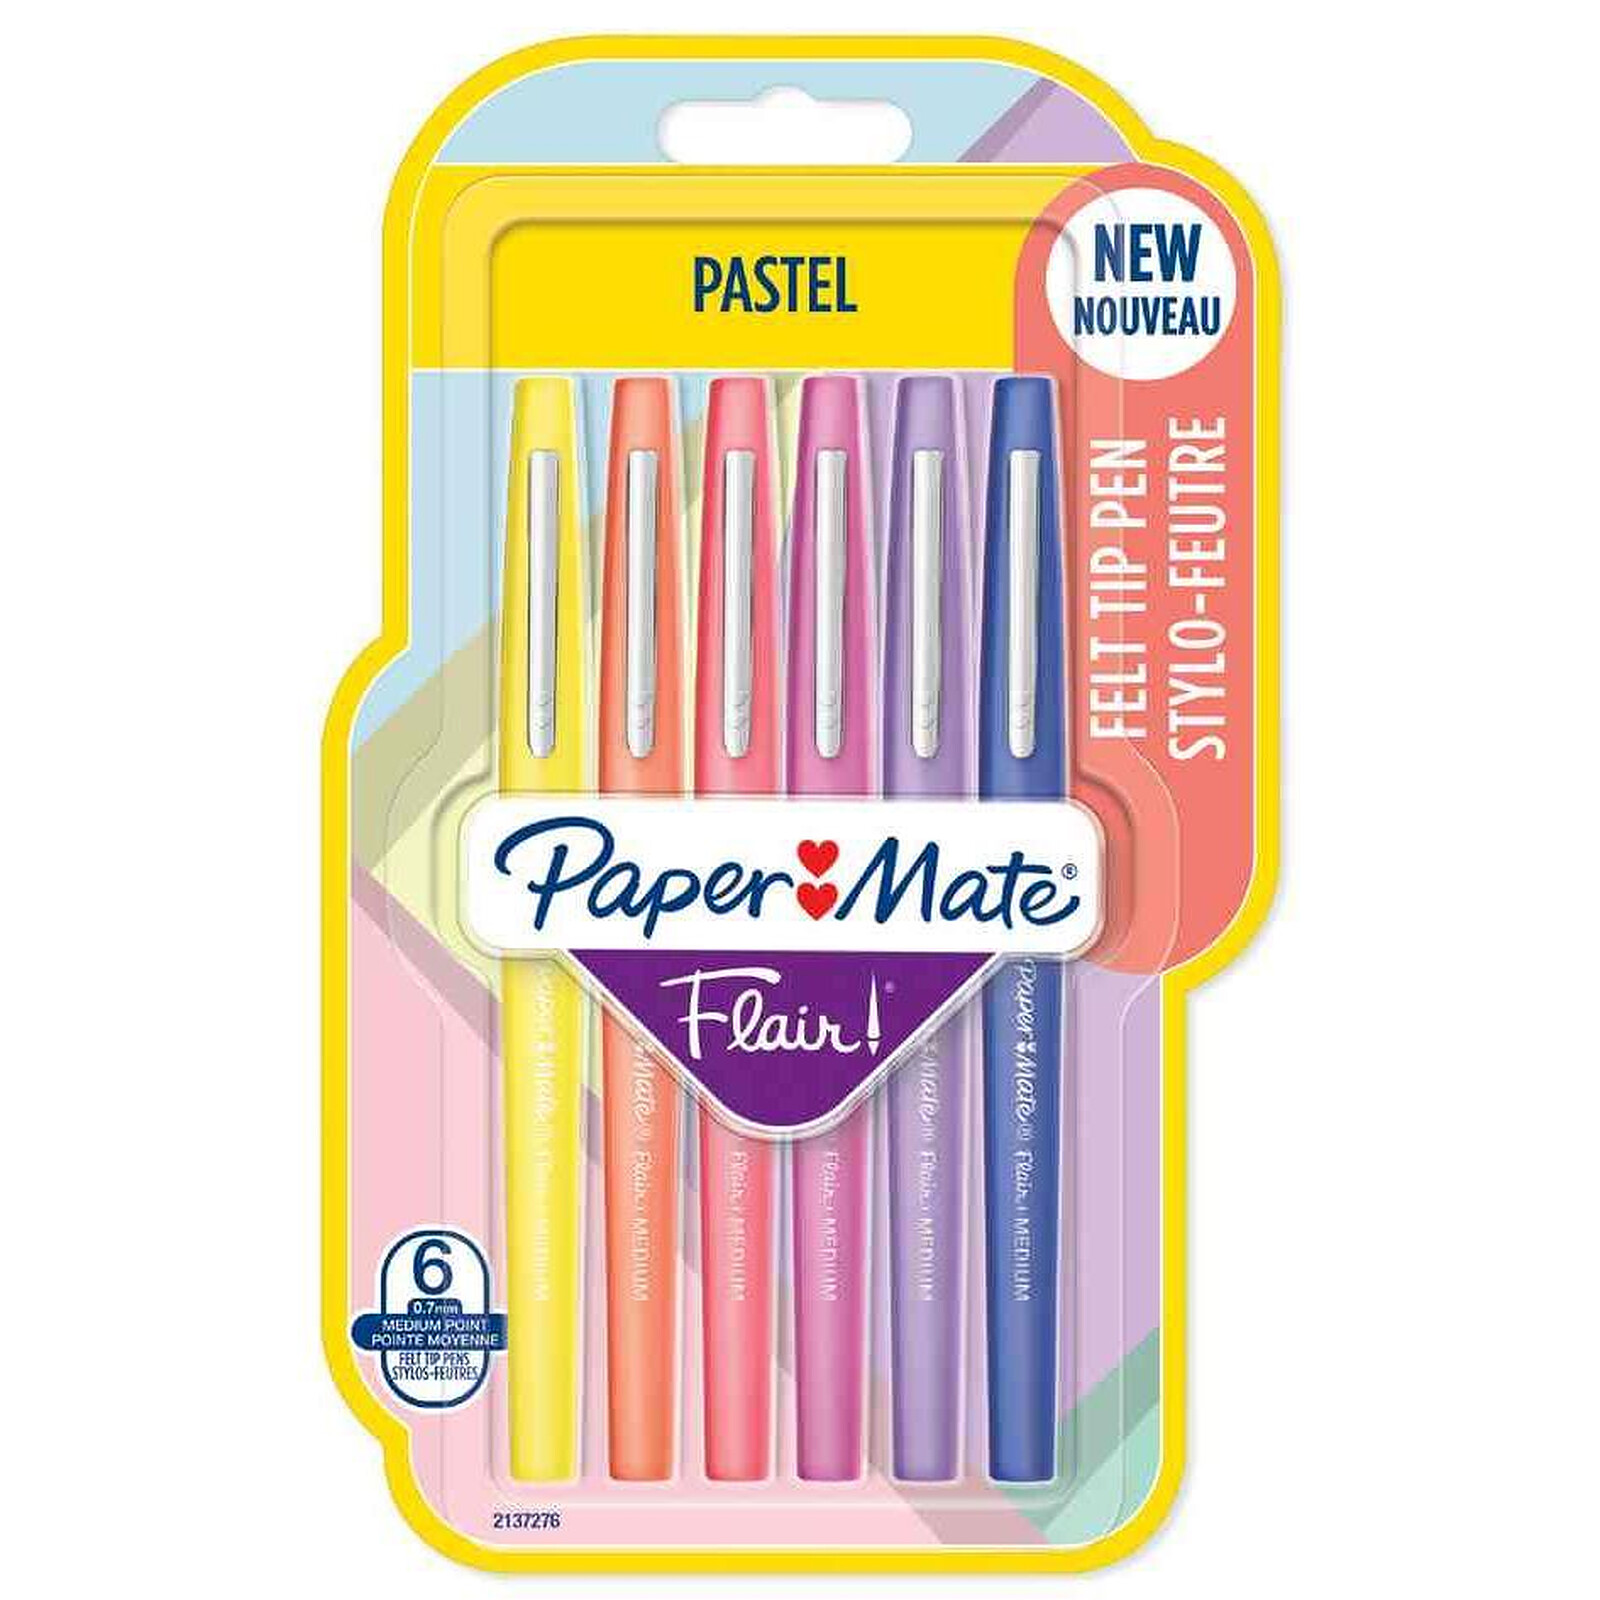 PAPERMATE Flair stylo feutre bleu - Stylo & feutre - Garantie 3